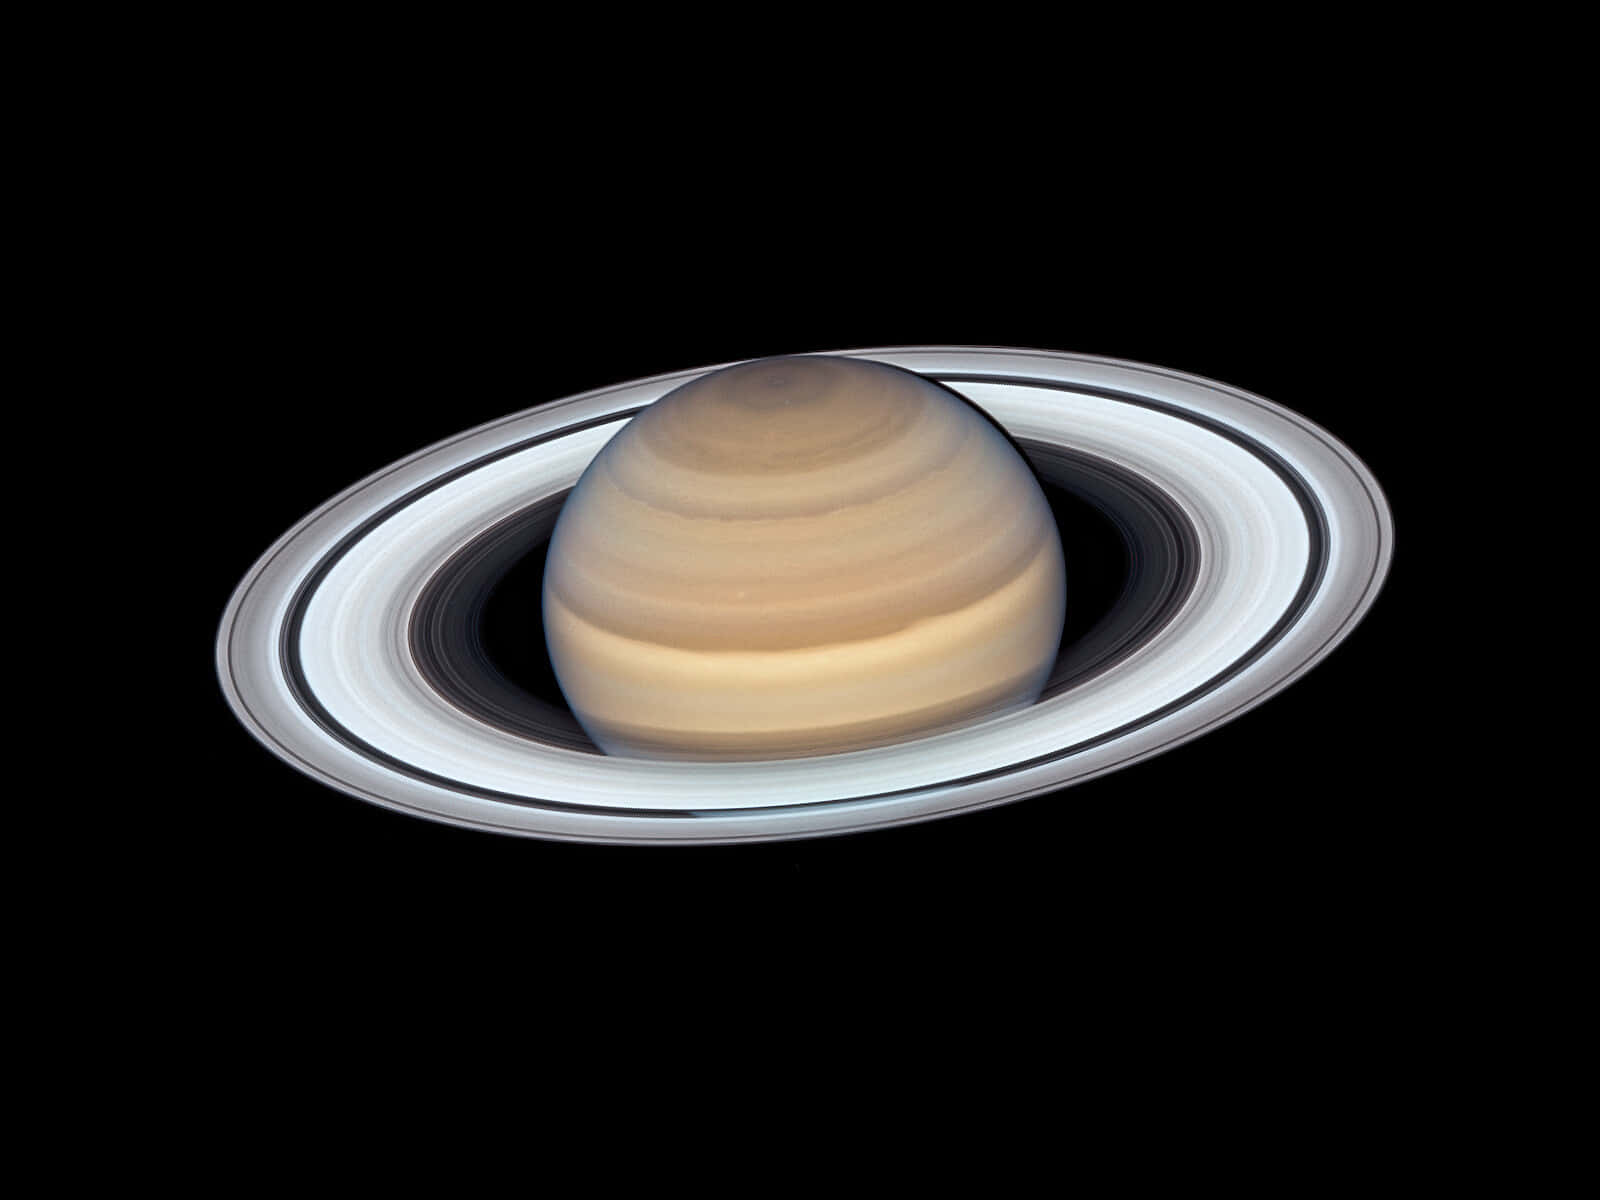 Impresionantevista De Saturno Y Sus Majestuosos Anillos.